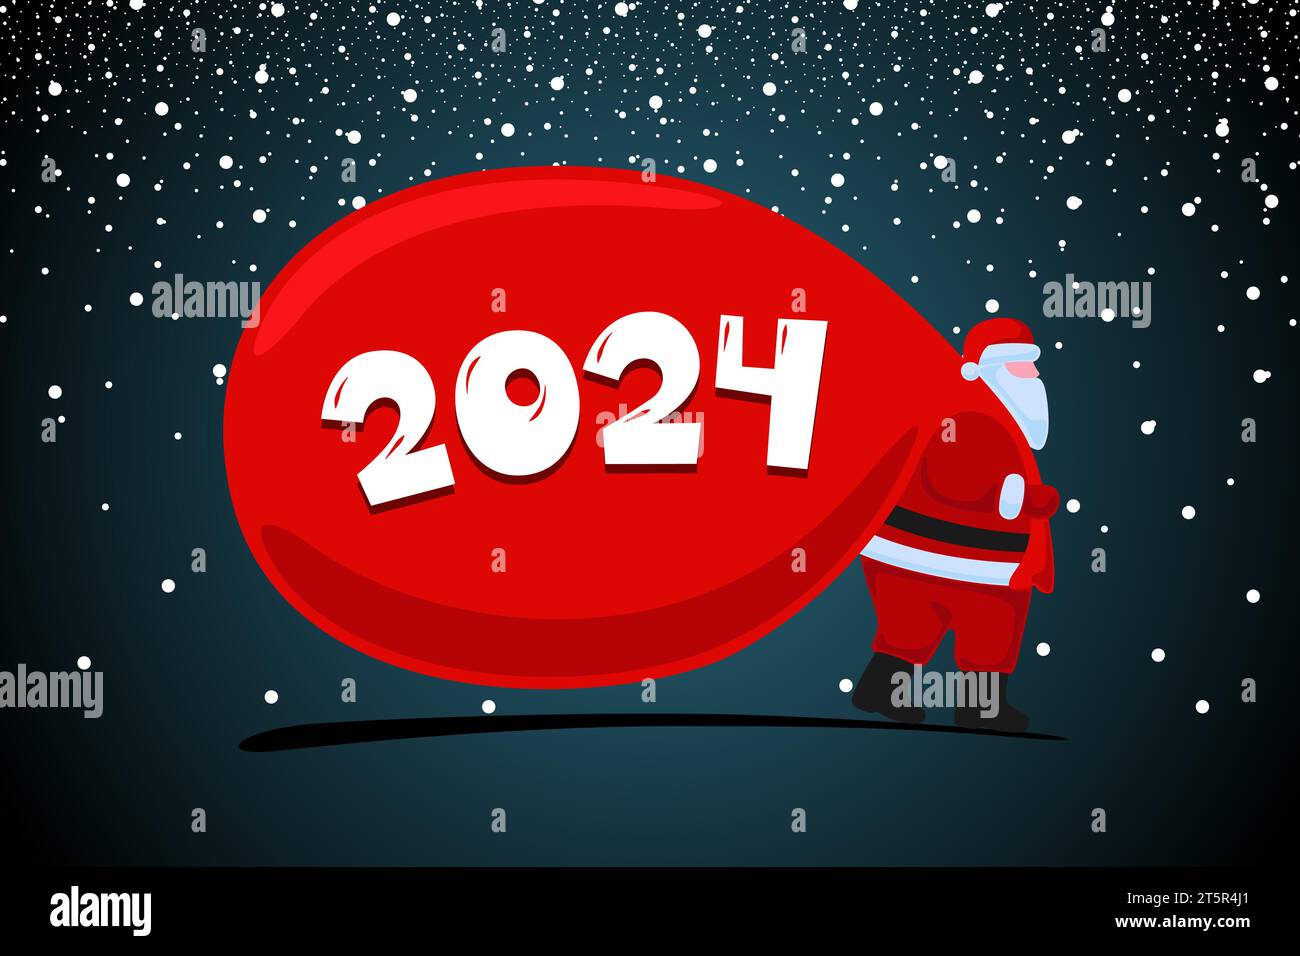 Weihnachtsmann Comic Figur kommt und trägt große schwere Geschenke rote Tasche. Weihnachten und Happy New Year 2024 Weihnachtsgrußkarte. Vektor EPS Feier Kalender Poster Illustration Stock Vektor